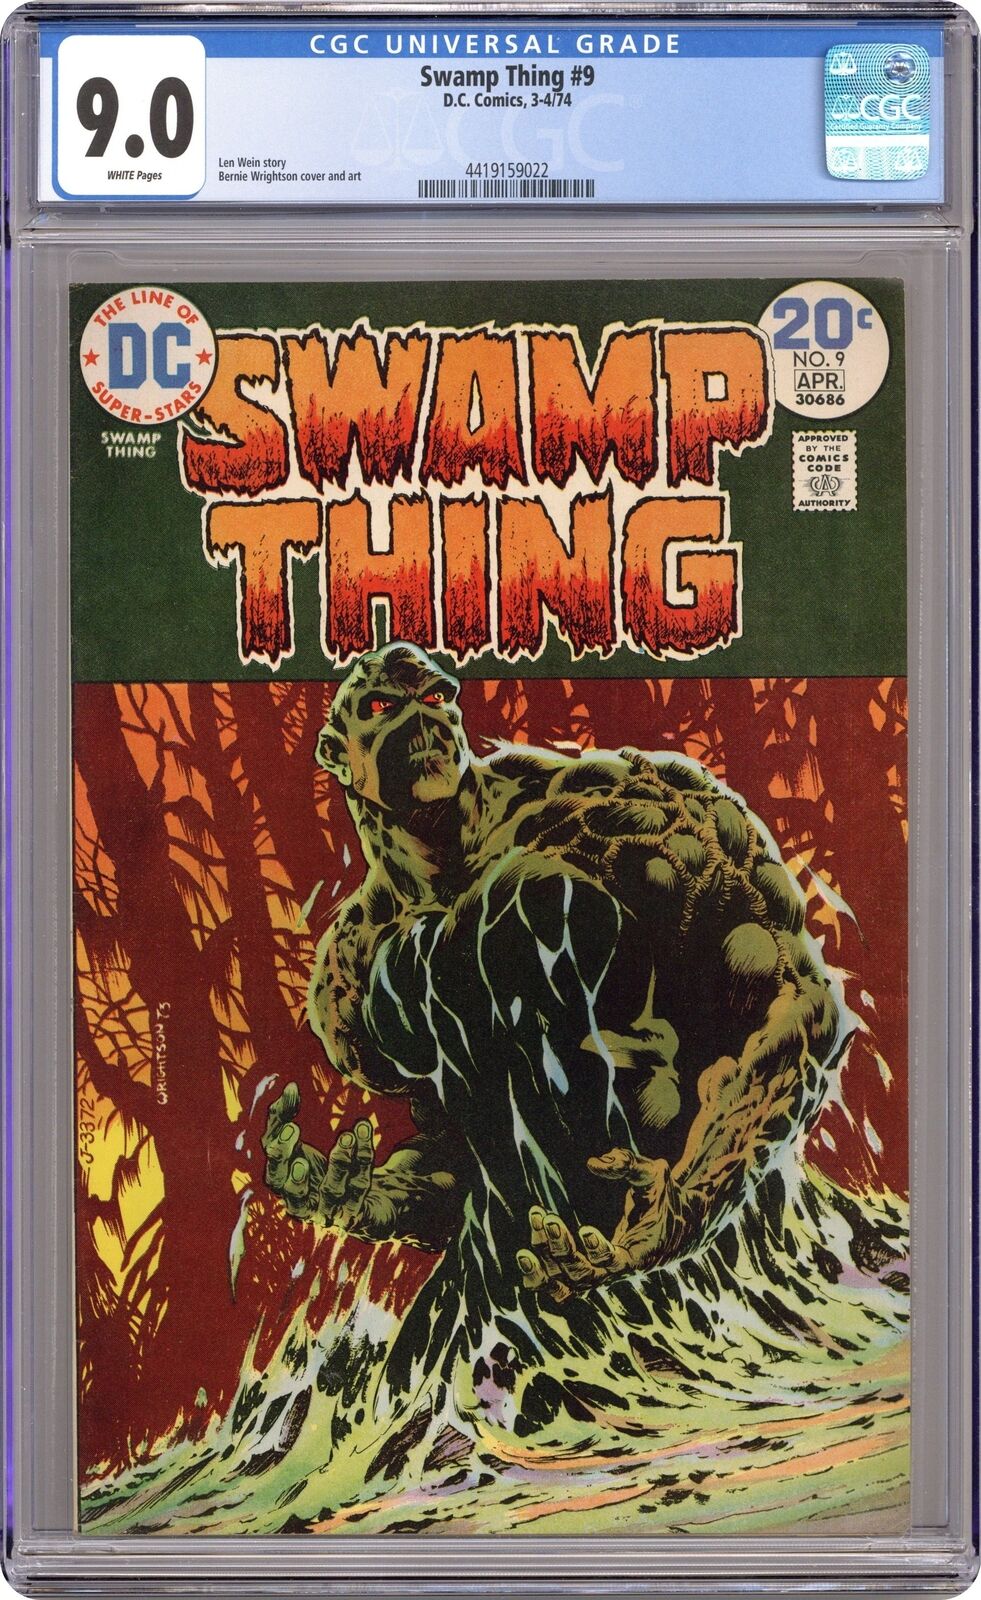 Swamp Thing #9 CGC 9.0 1974 4419159022